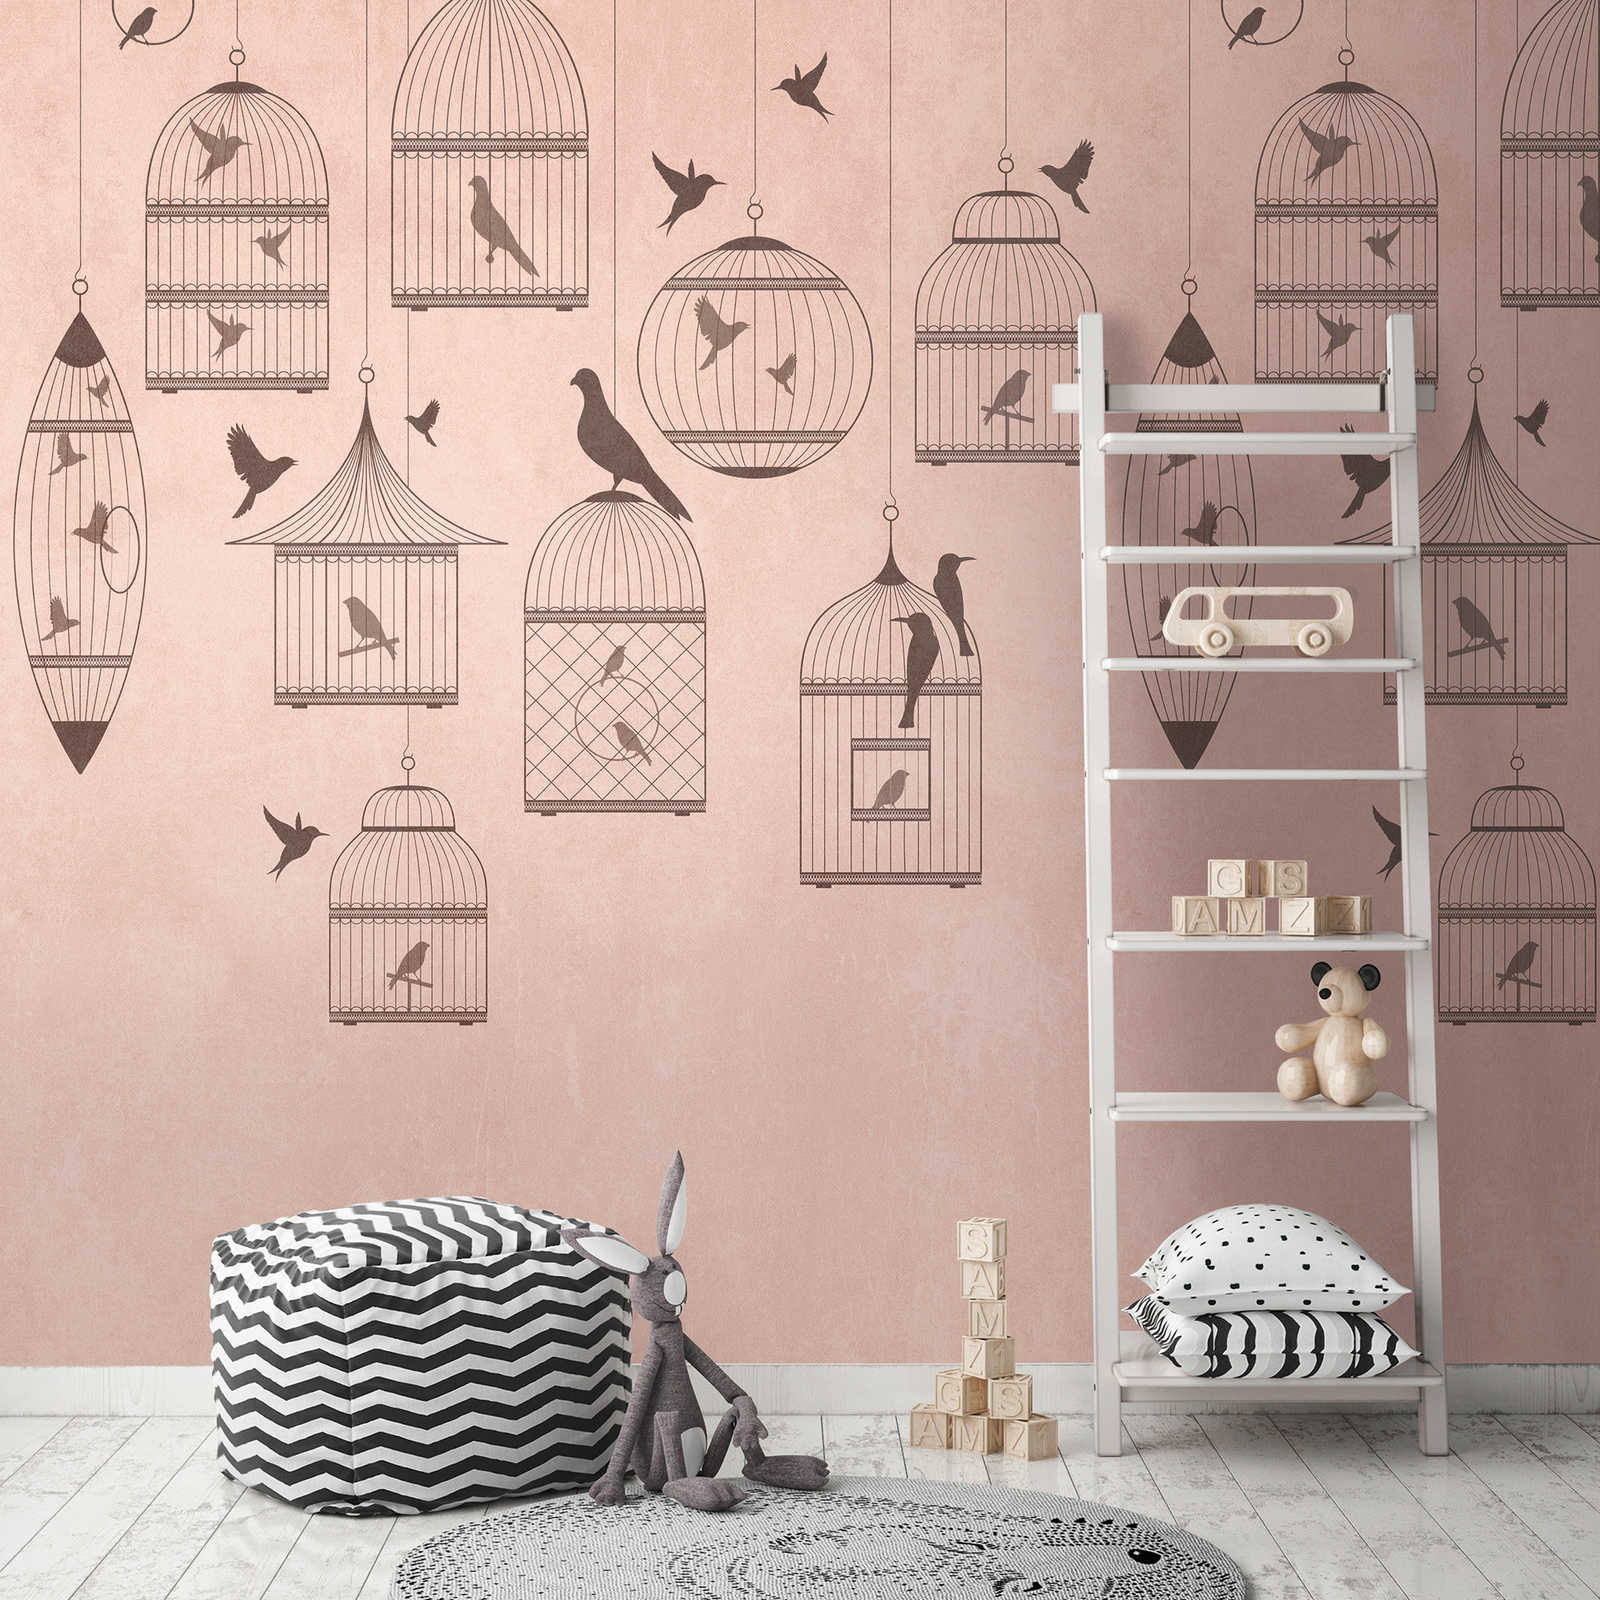 Behang nieuwigheid - roze motief behang zangvogel & vintage volière
